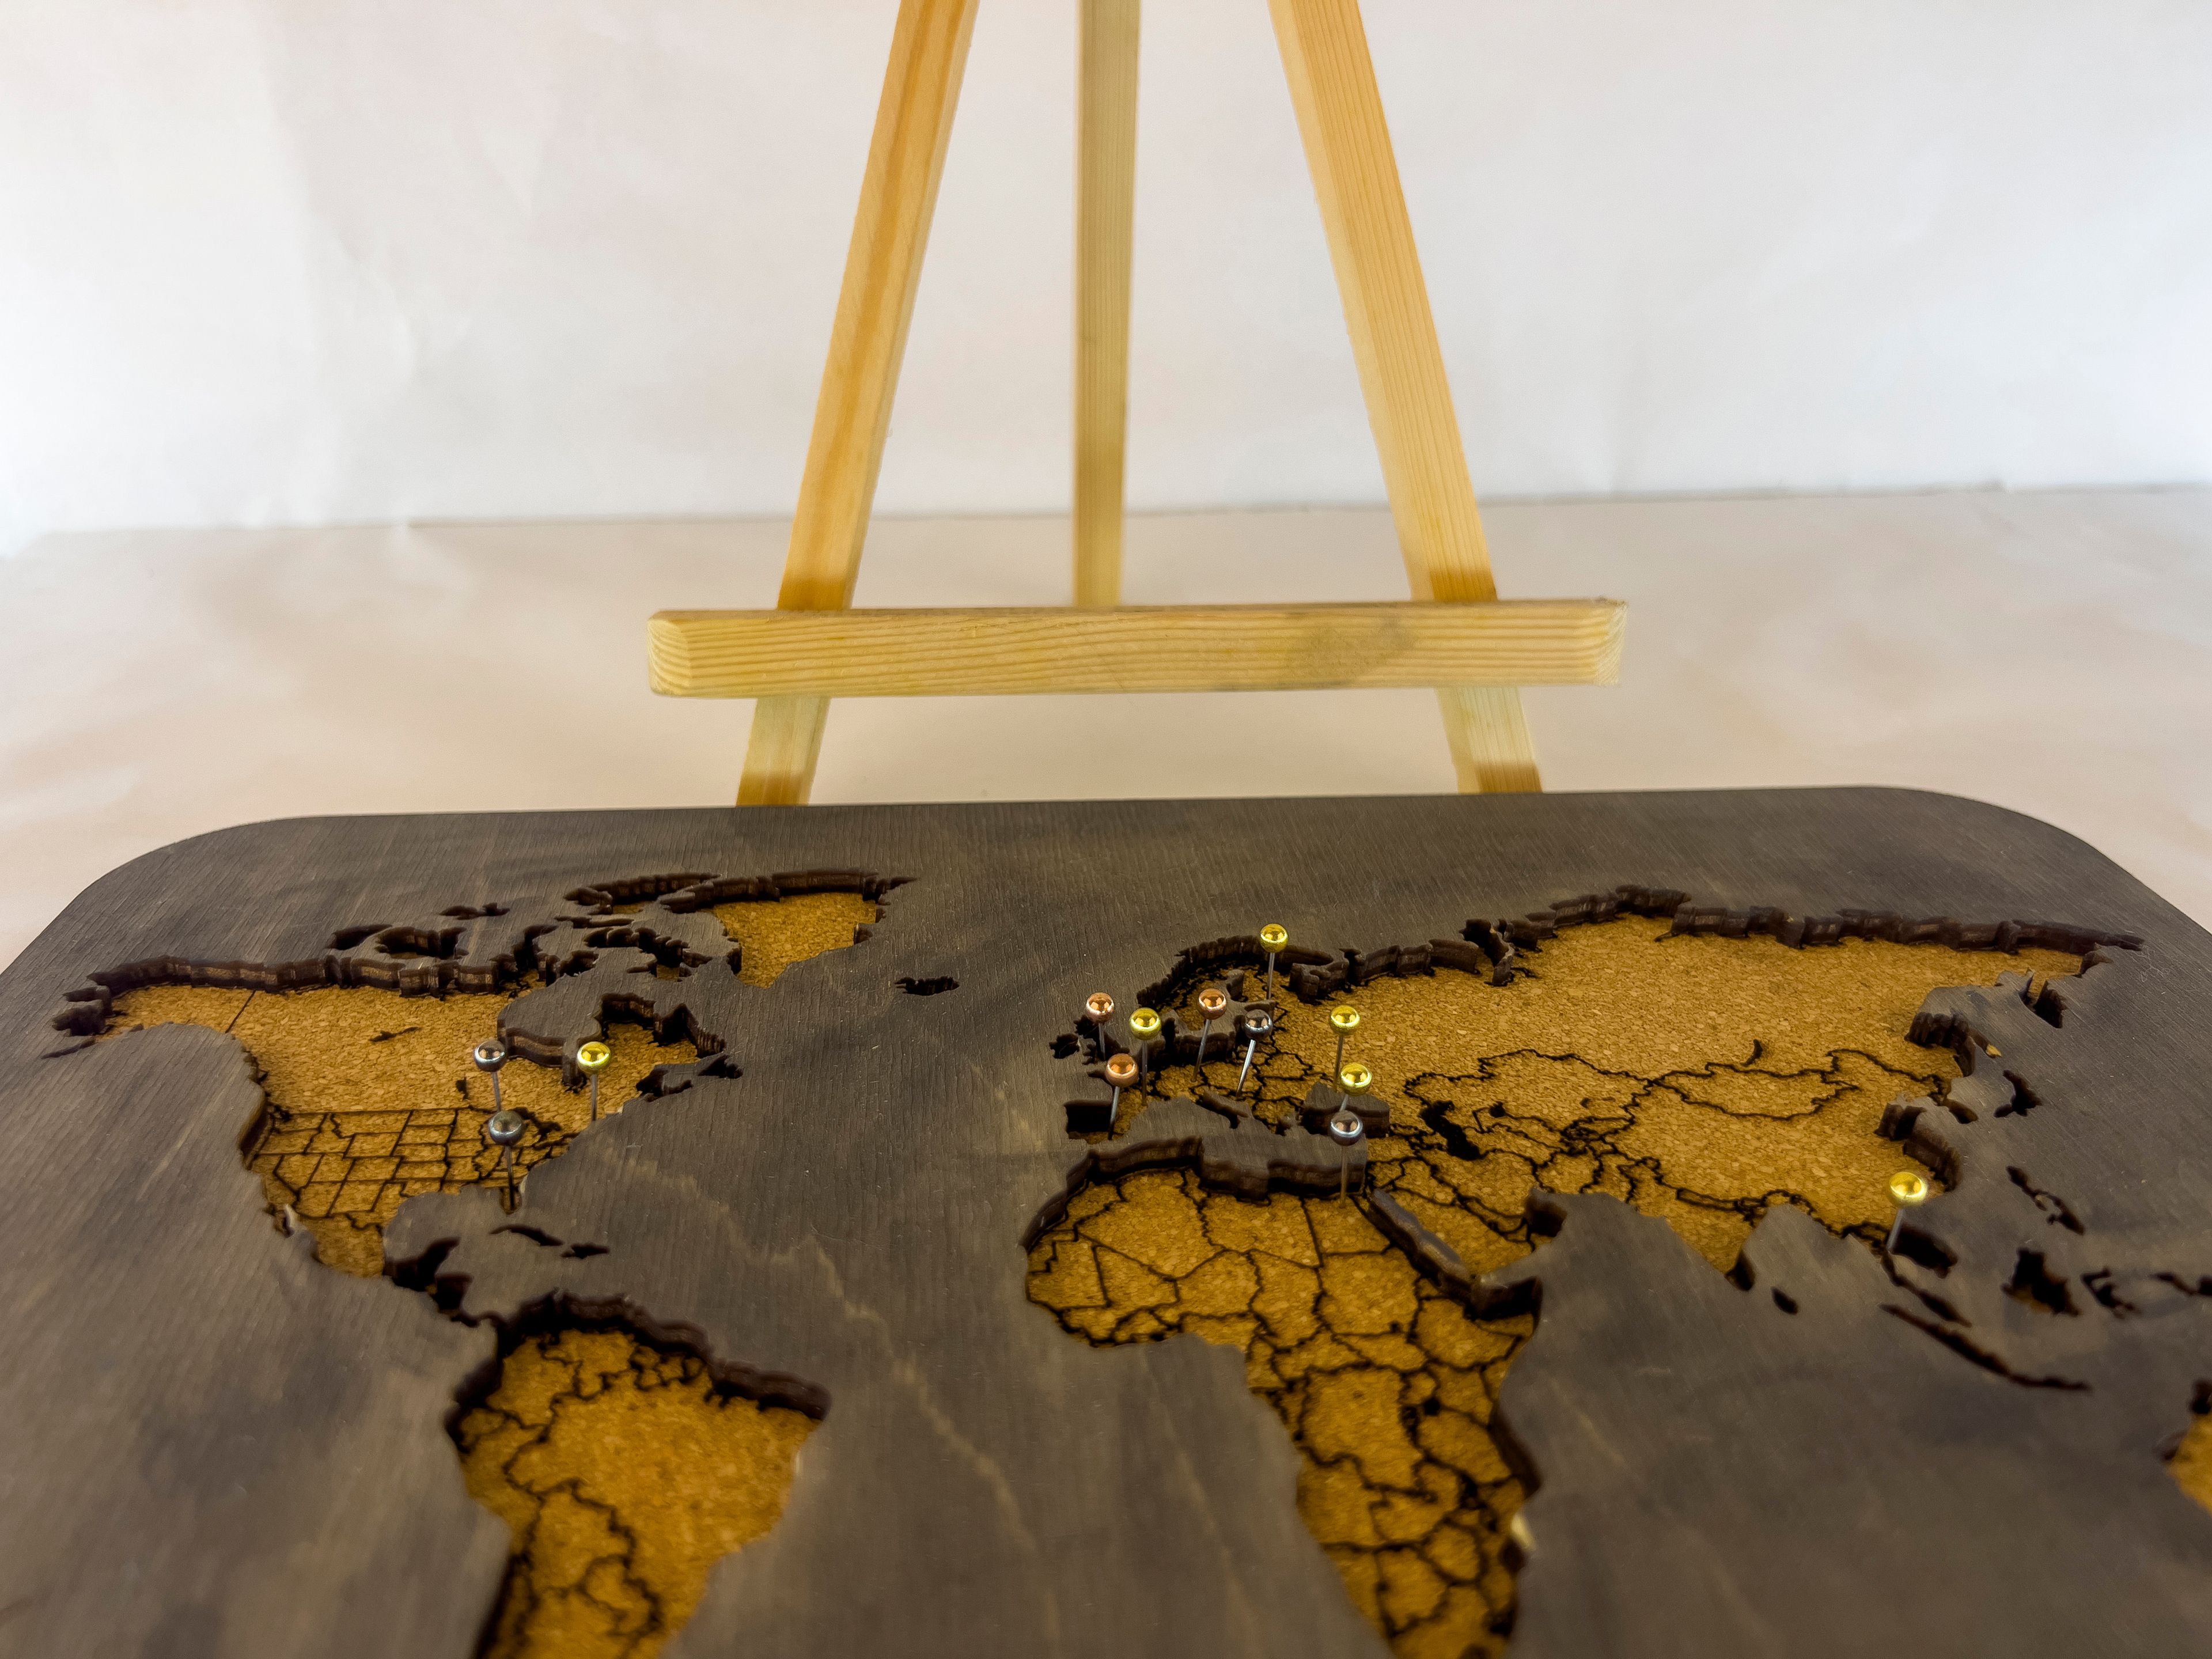 703 - Masaüstü Dünya Haritası (Ahşap ve Mantar)